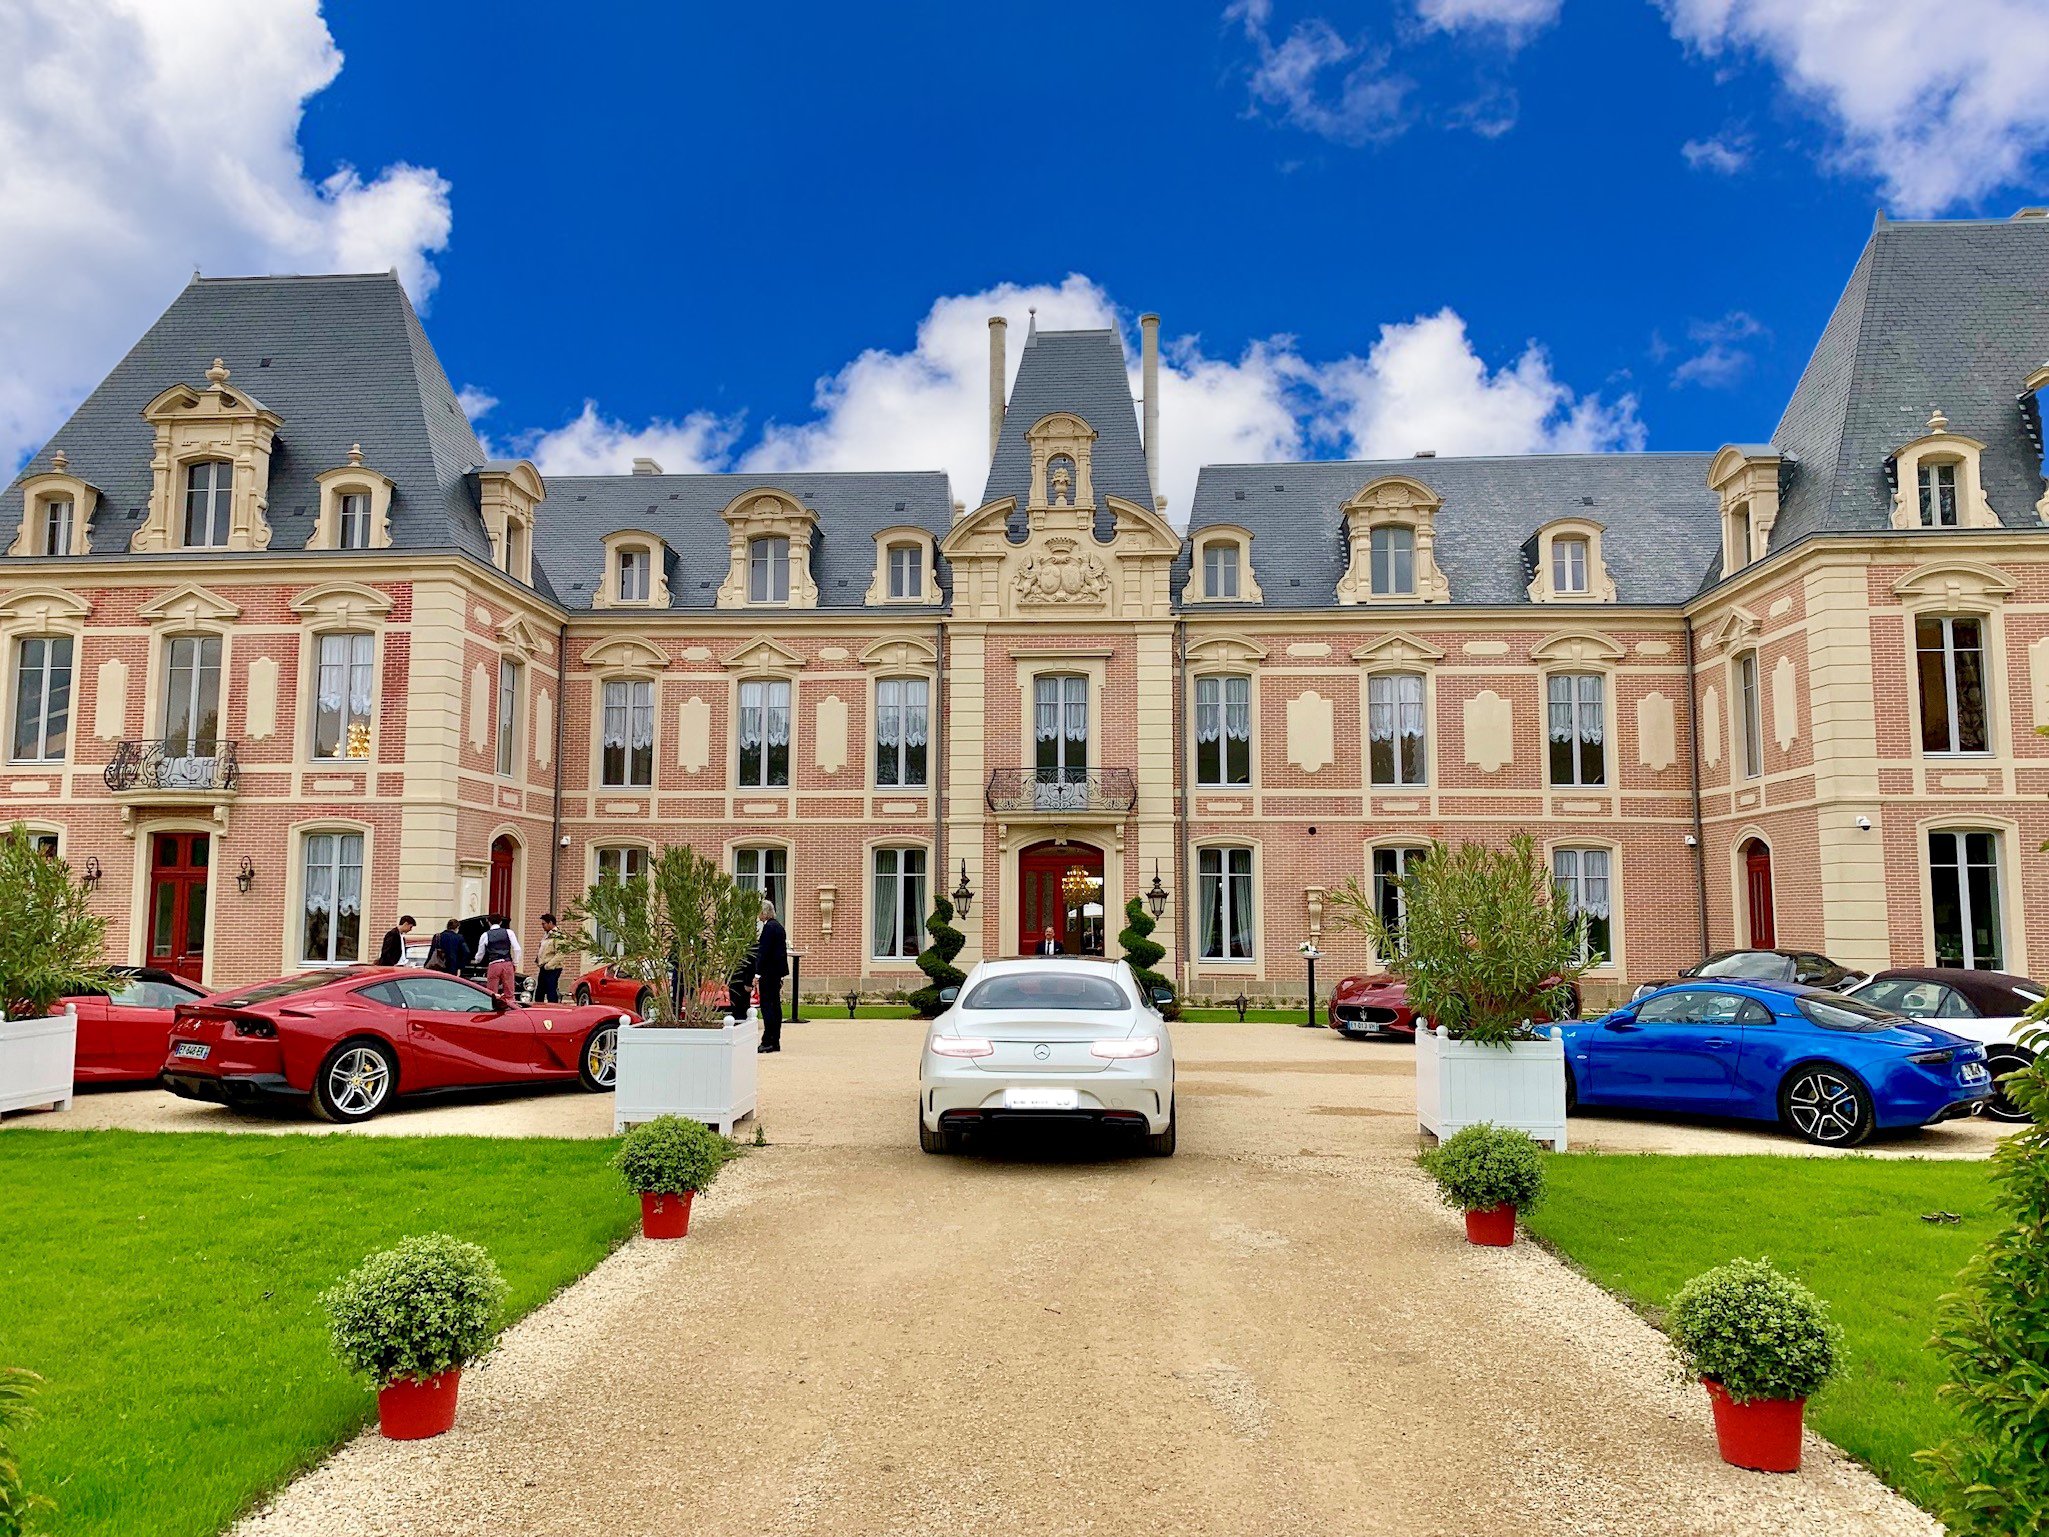 Alexandra Palace | Hotel 5 étoiles, restaurant gastronomique, golf | En Nouvelle Aquitaine, à 30 min de Niort, France